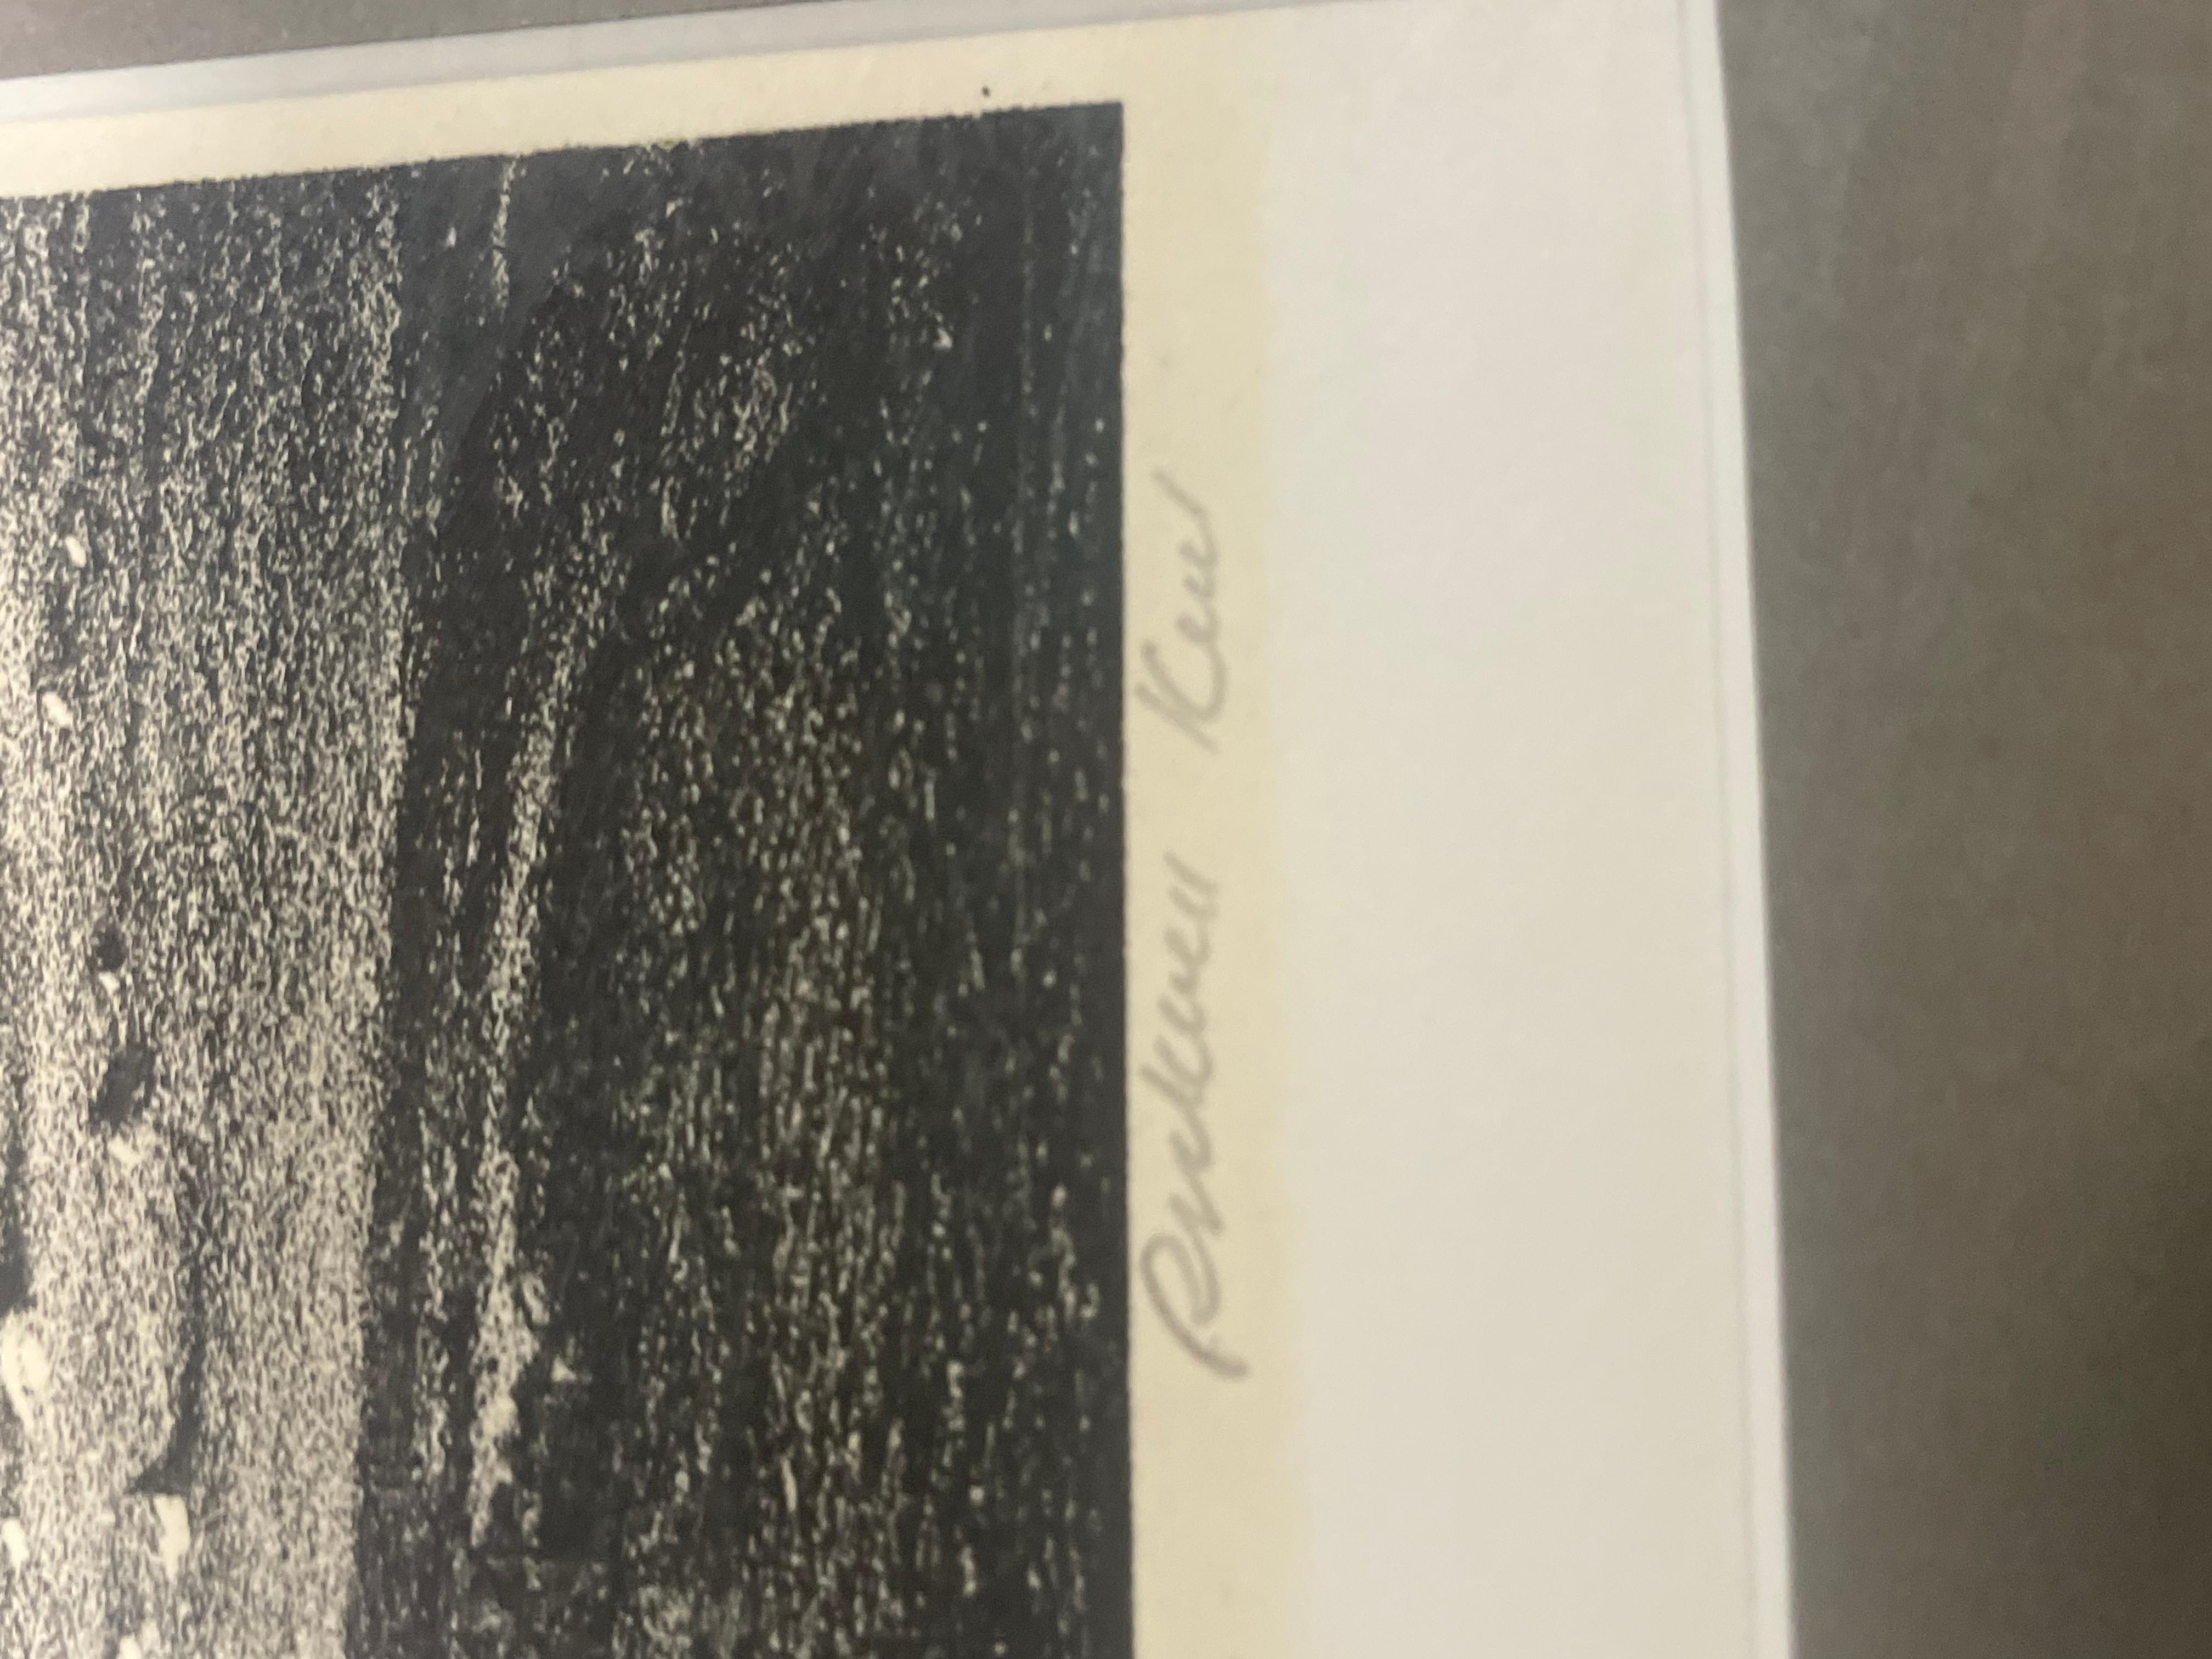 Rockwell Kent (américain 1882-1971), Beowulf, lithographie, 1931

Dimensions totales : 18 1/4 par 14 1/4 pouces 
Vue : 14 5/8 par 10 5/8 pouces

Poids

Condit
le papier légèrement teinté, avec une éraflure verticale juste à gauche de la signature,